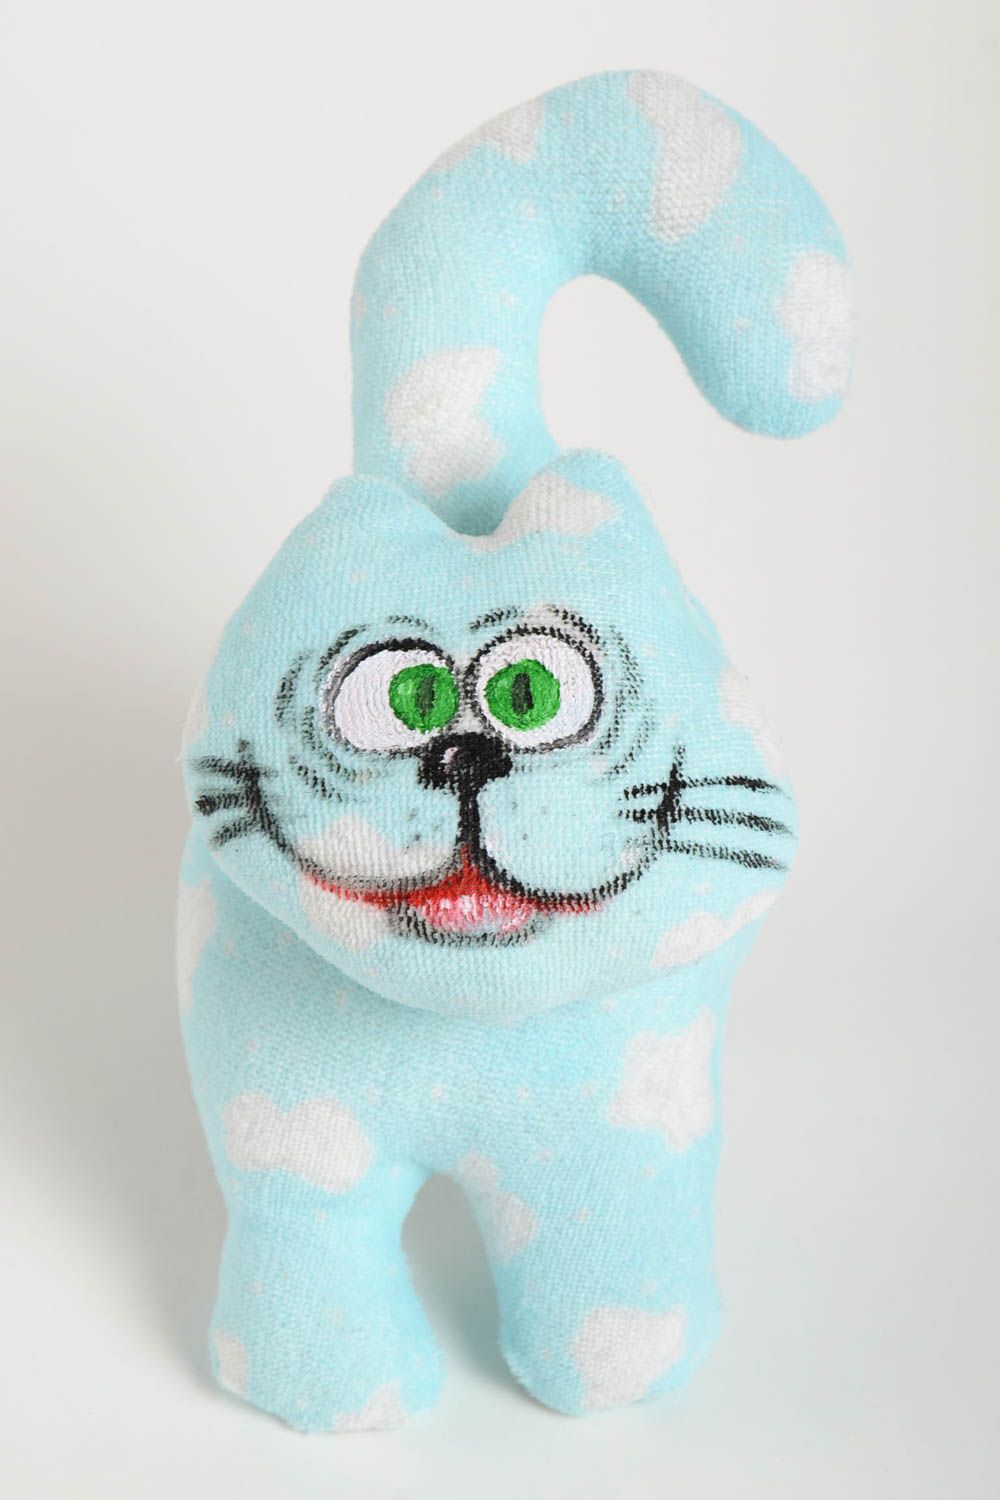 Мягкая игрушка ручной работы игрушка кот голубой забавный подарок на новоселье фото 2